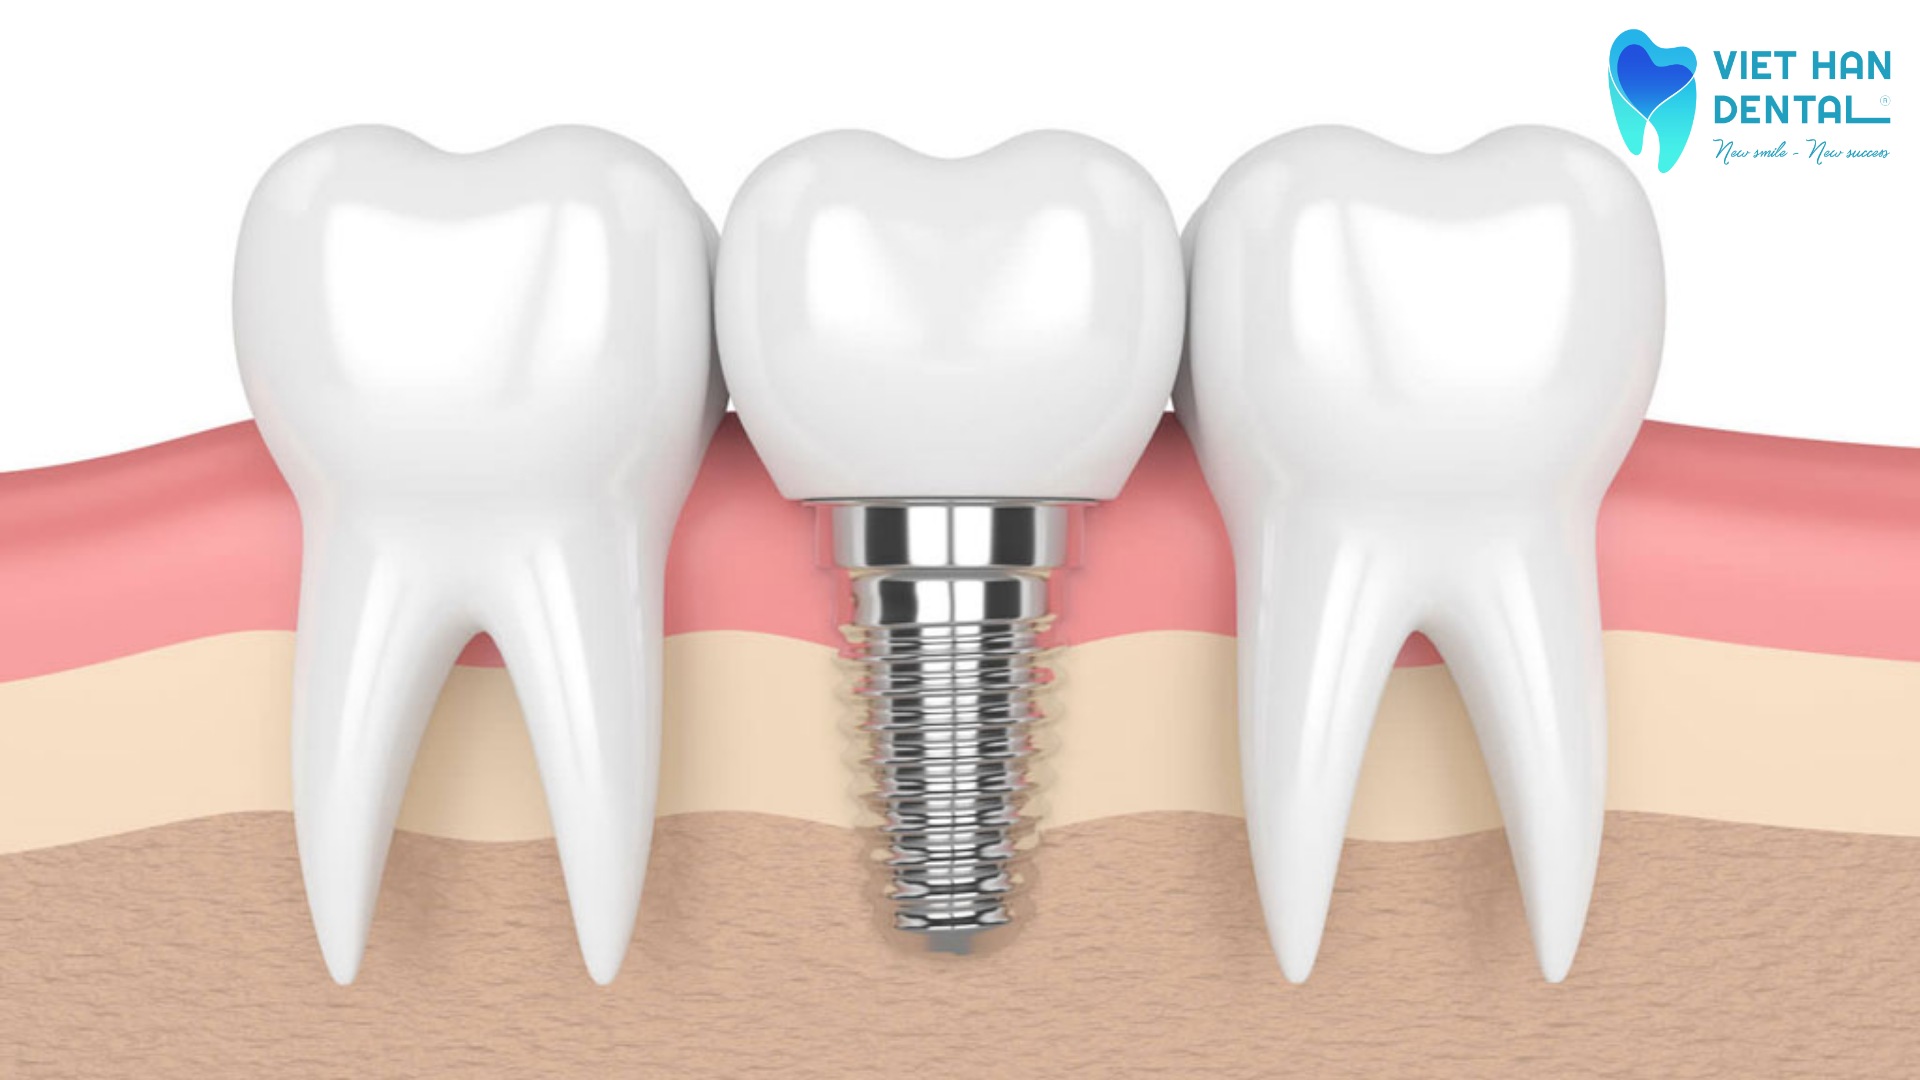 Răng Implant nằm giữa hai răng thật 